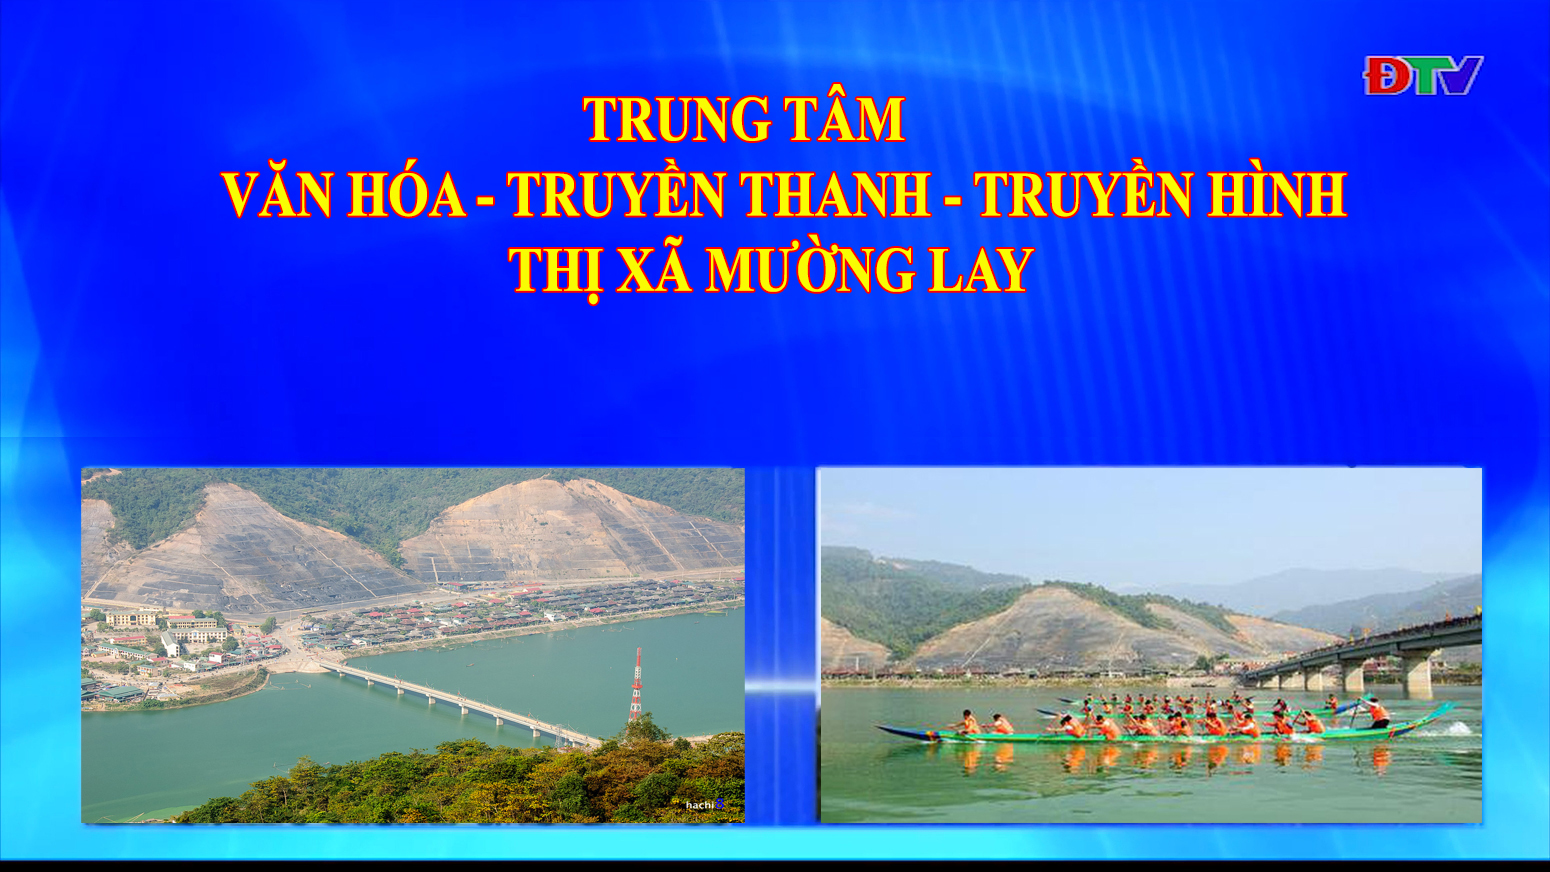 Trung tâm VH-TTTH thị xã Mường Lay (Ngày 10-6-2022)